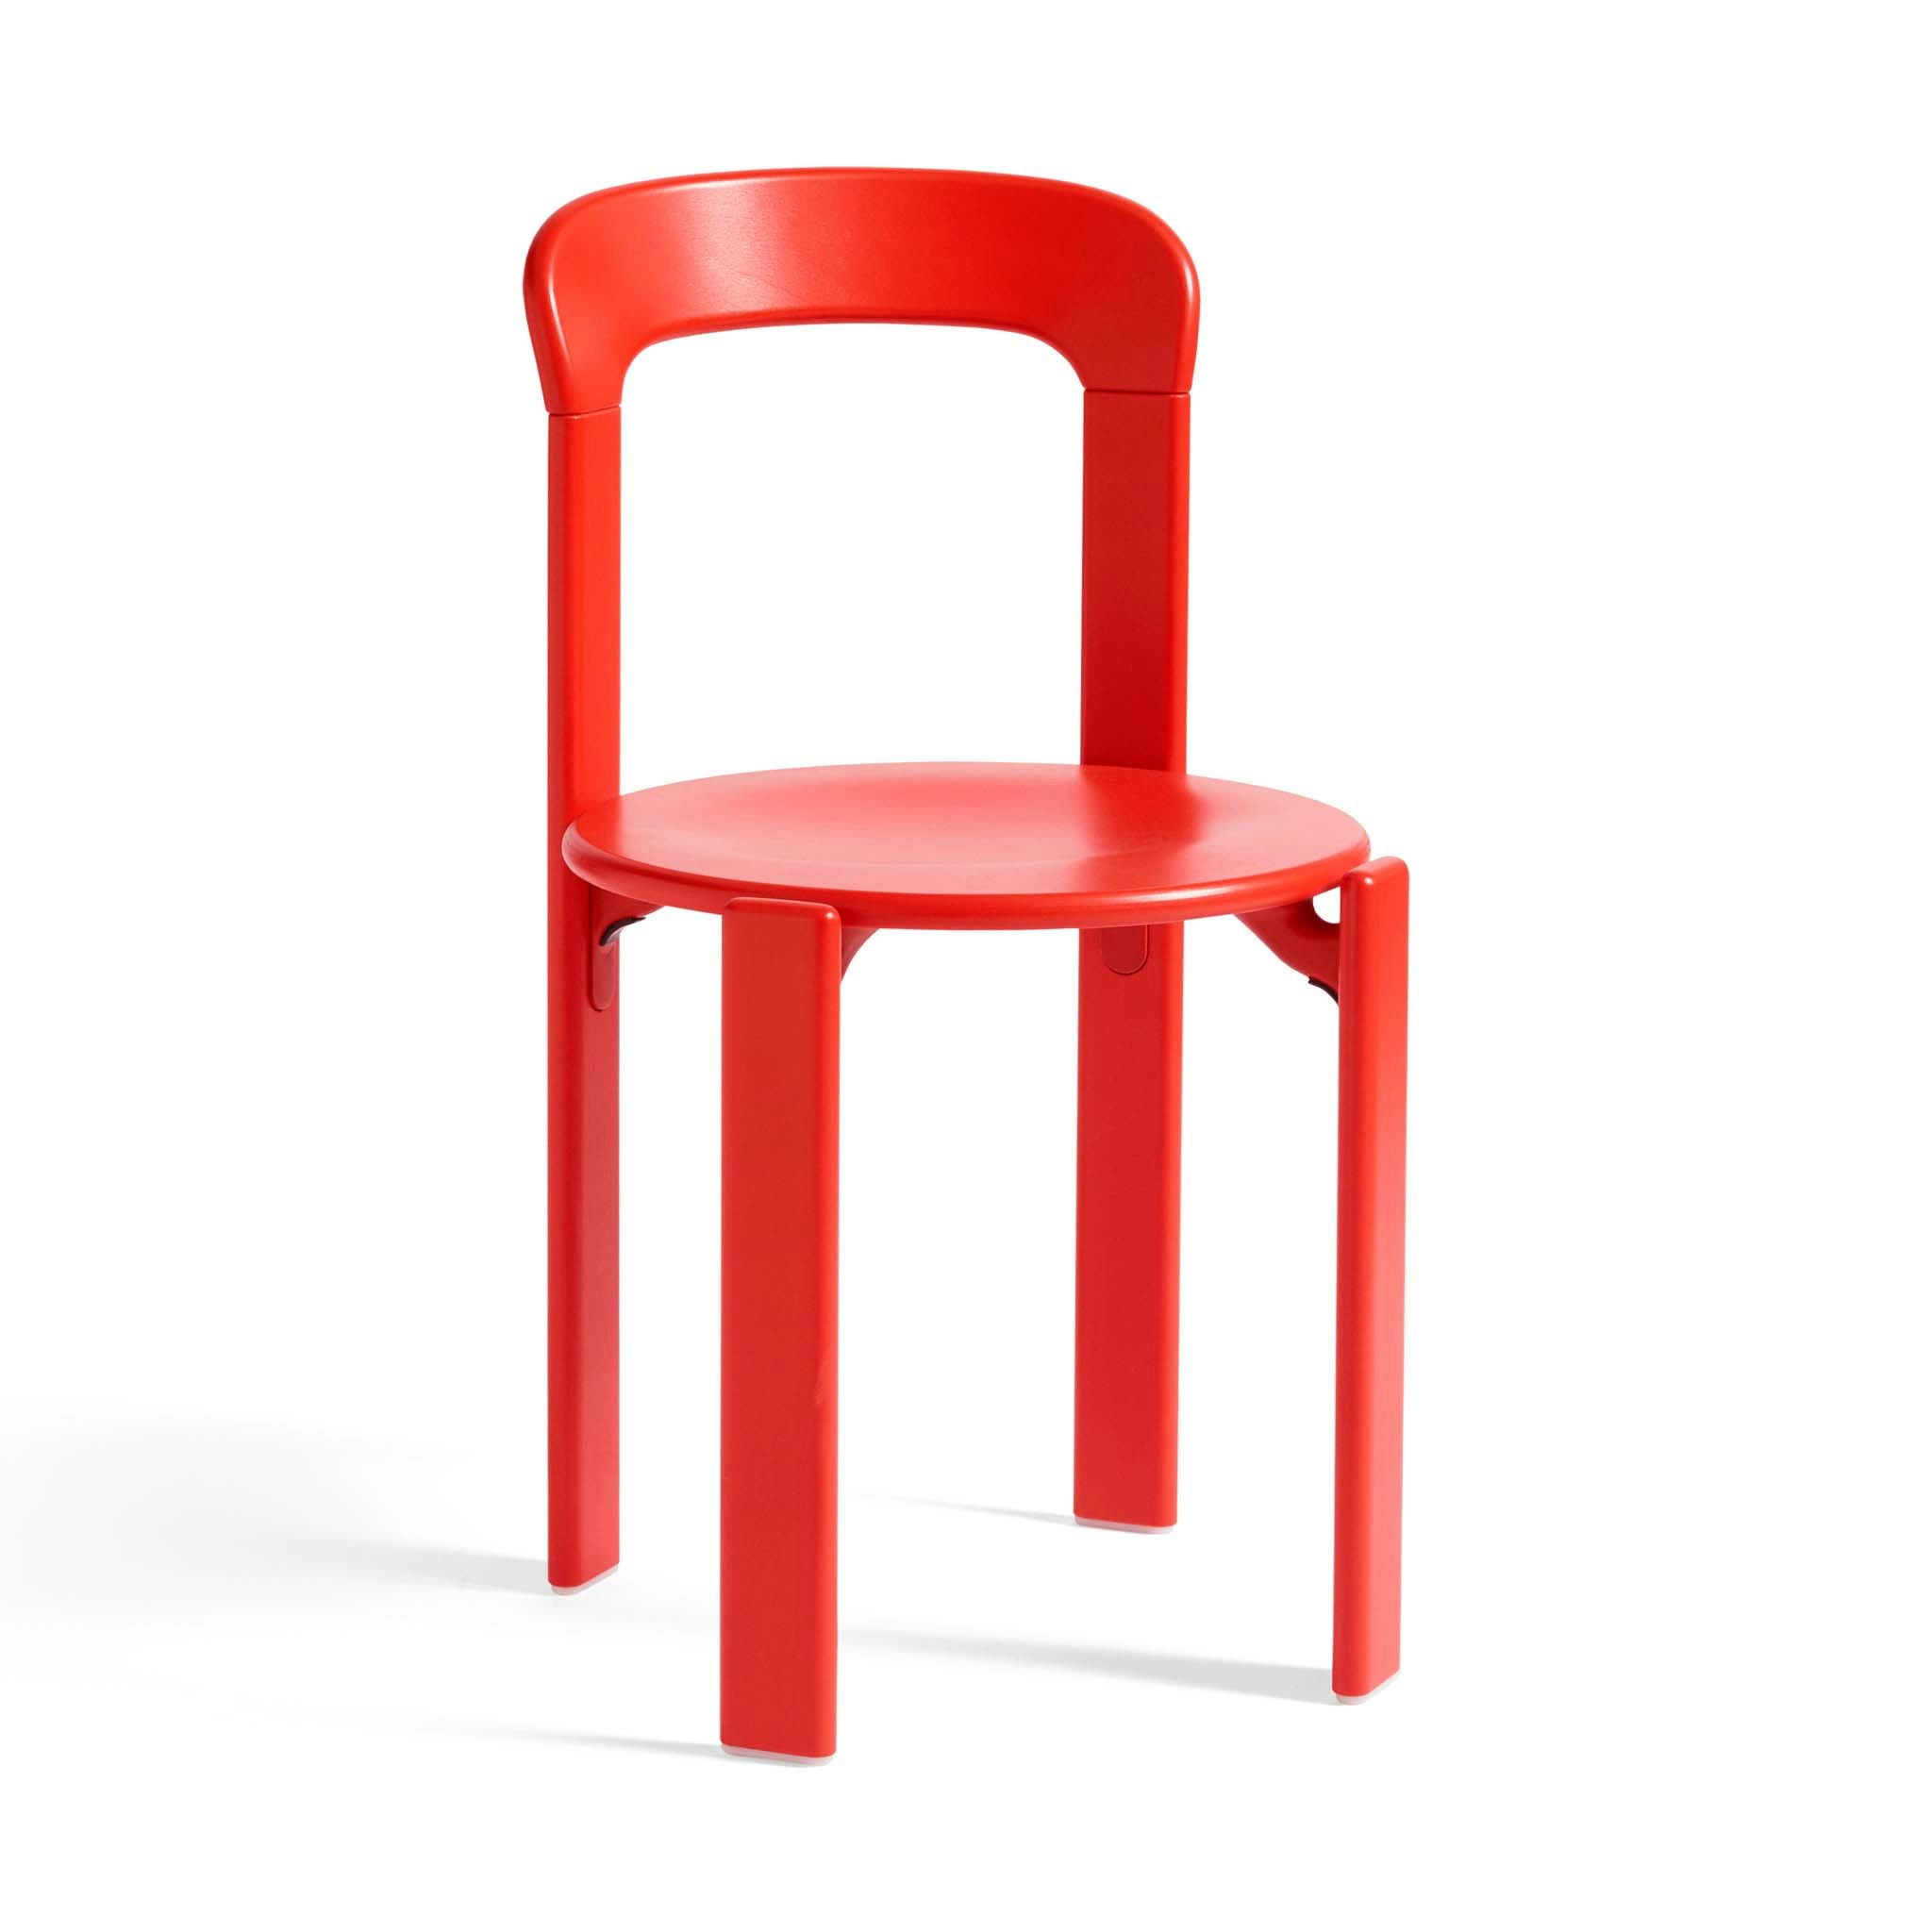 Rey Chair by Bruno Rey / Dietiker for Hay